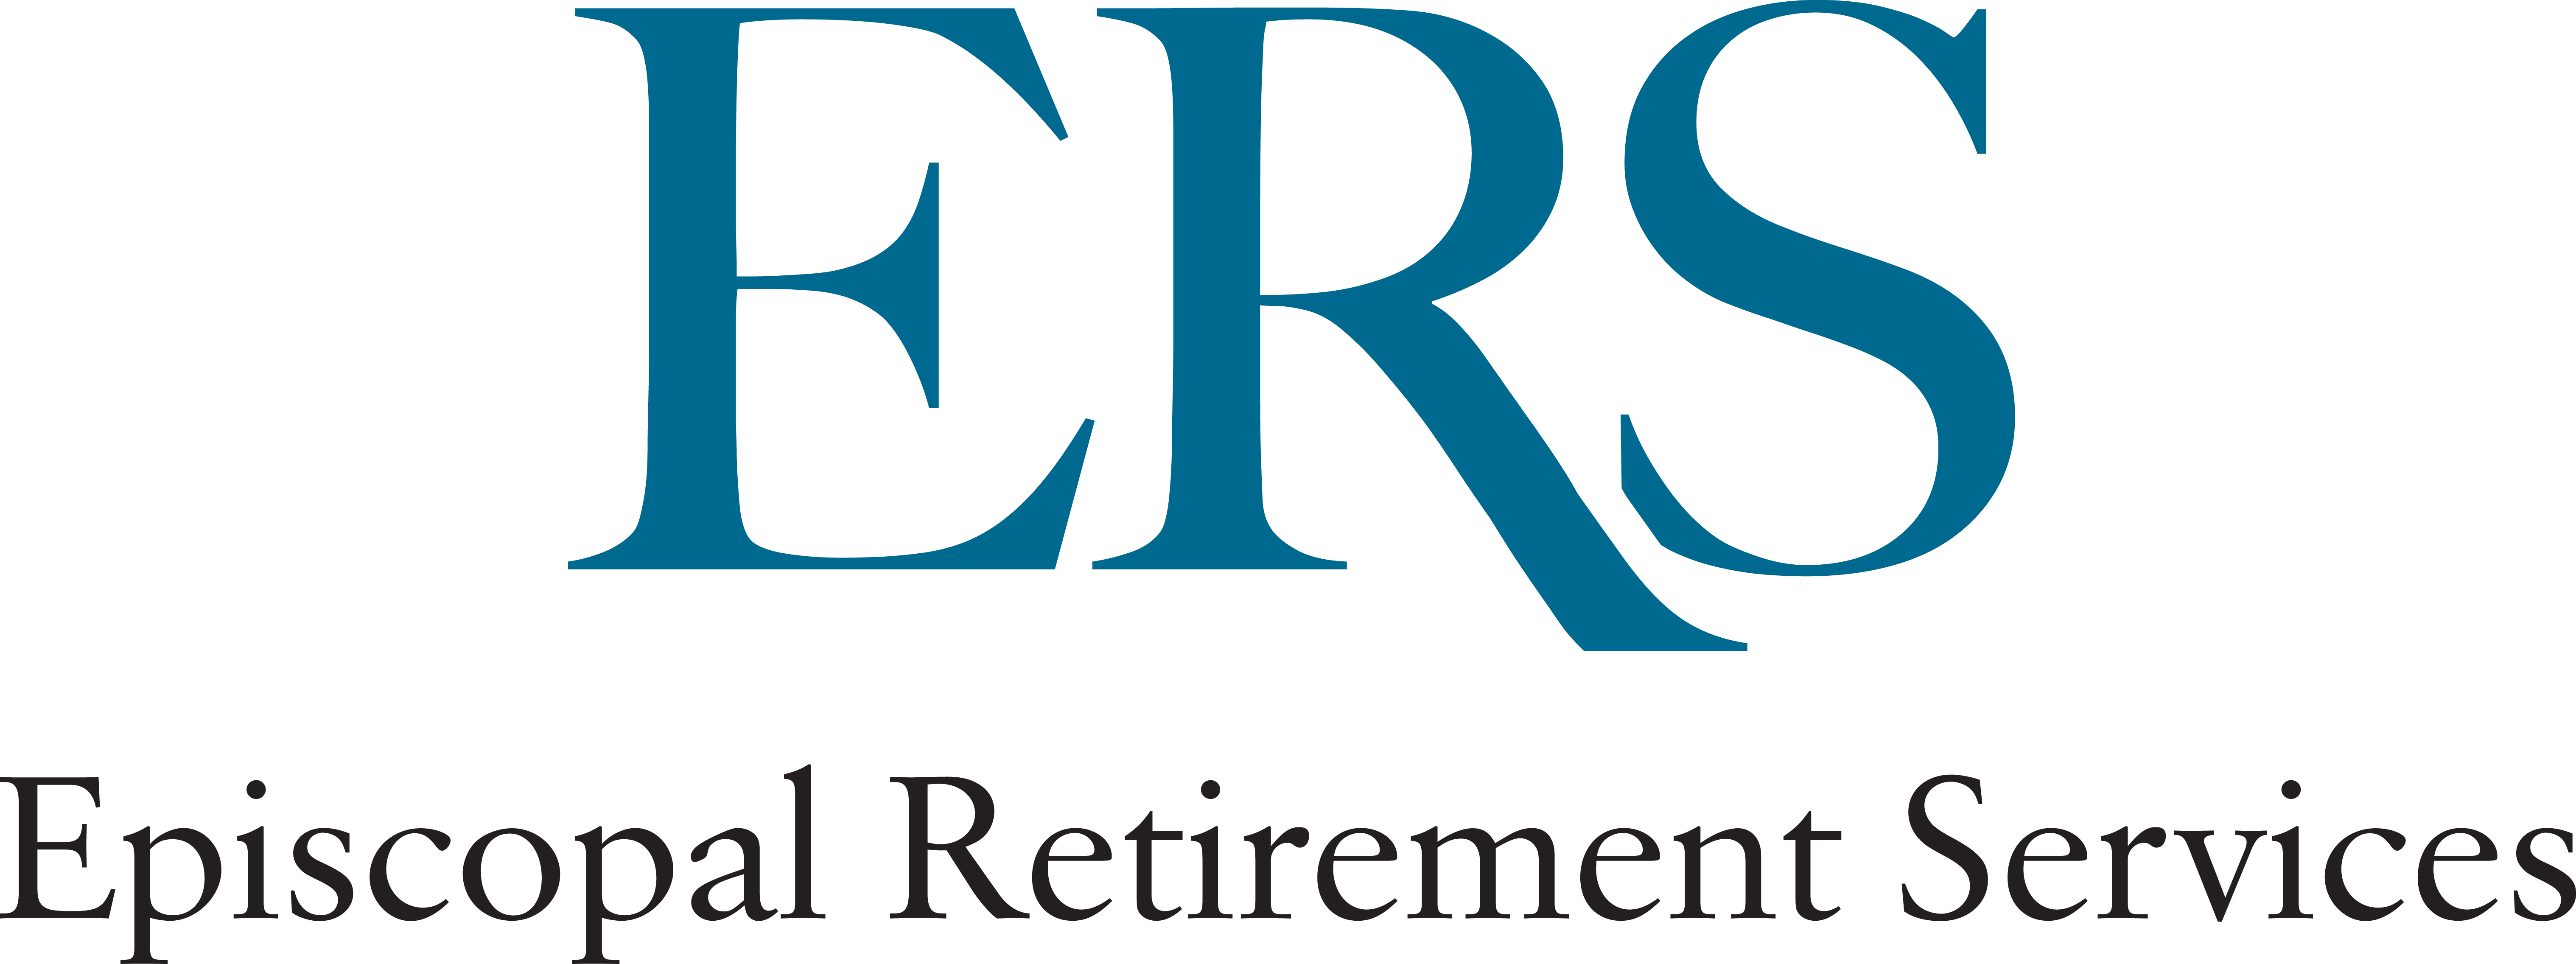 Episcopal Retirement Services, Inc. logo